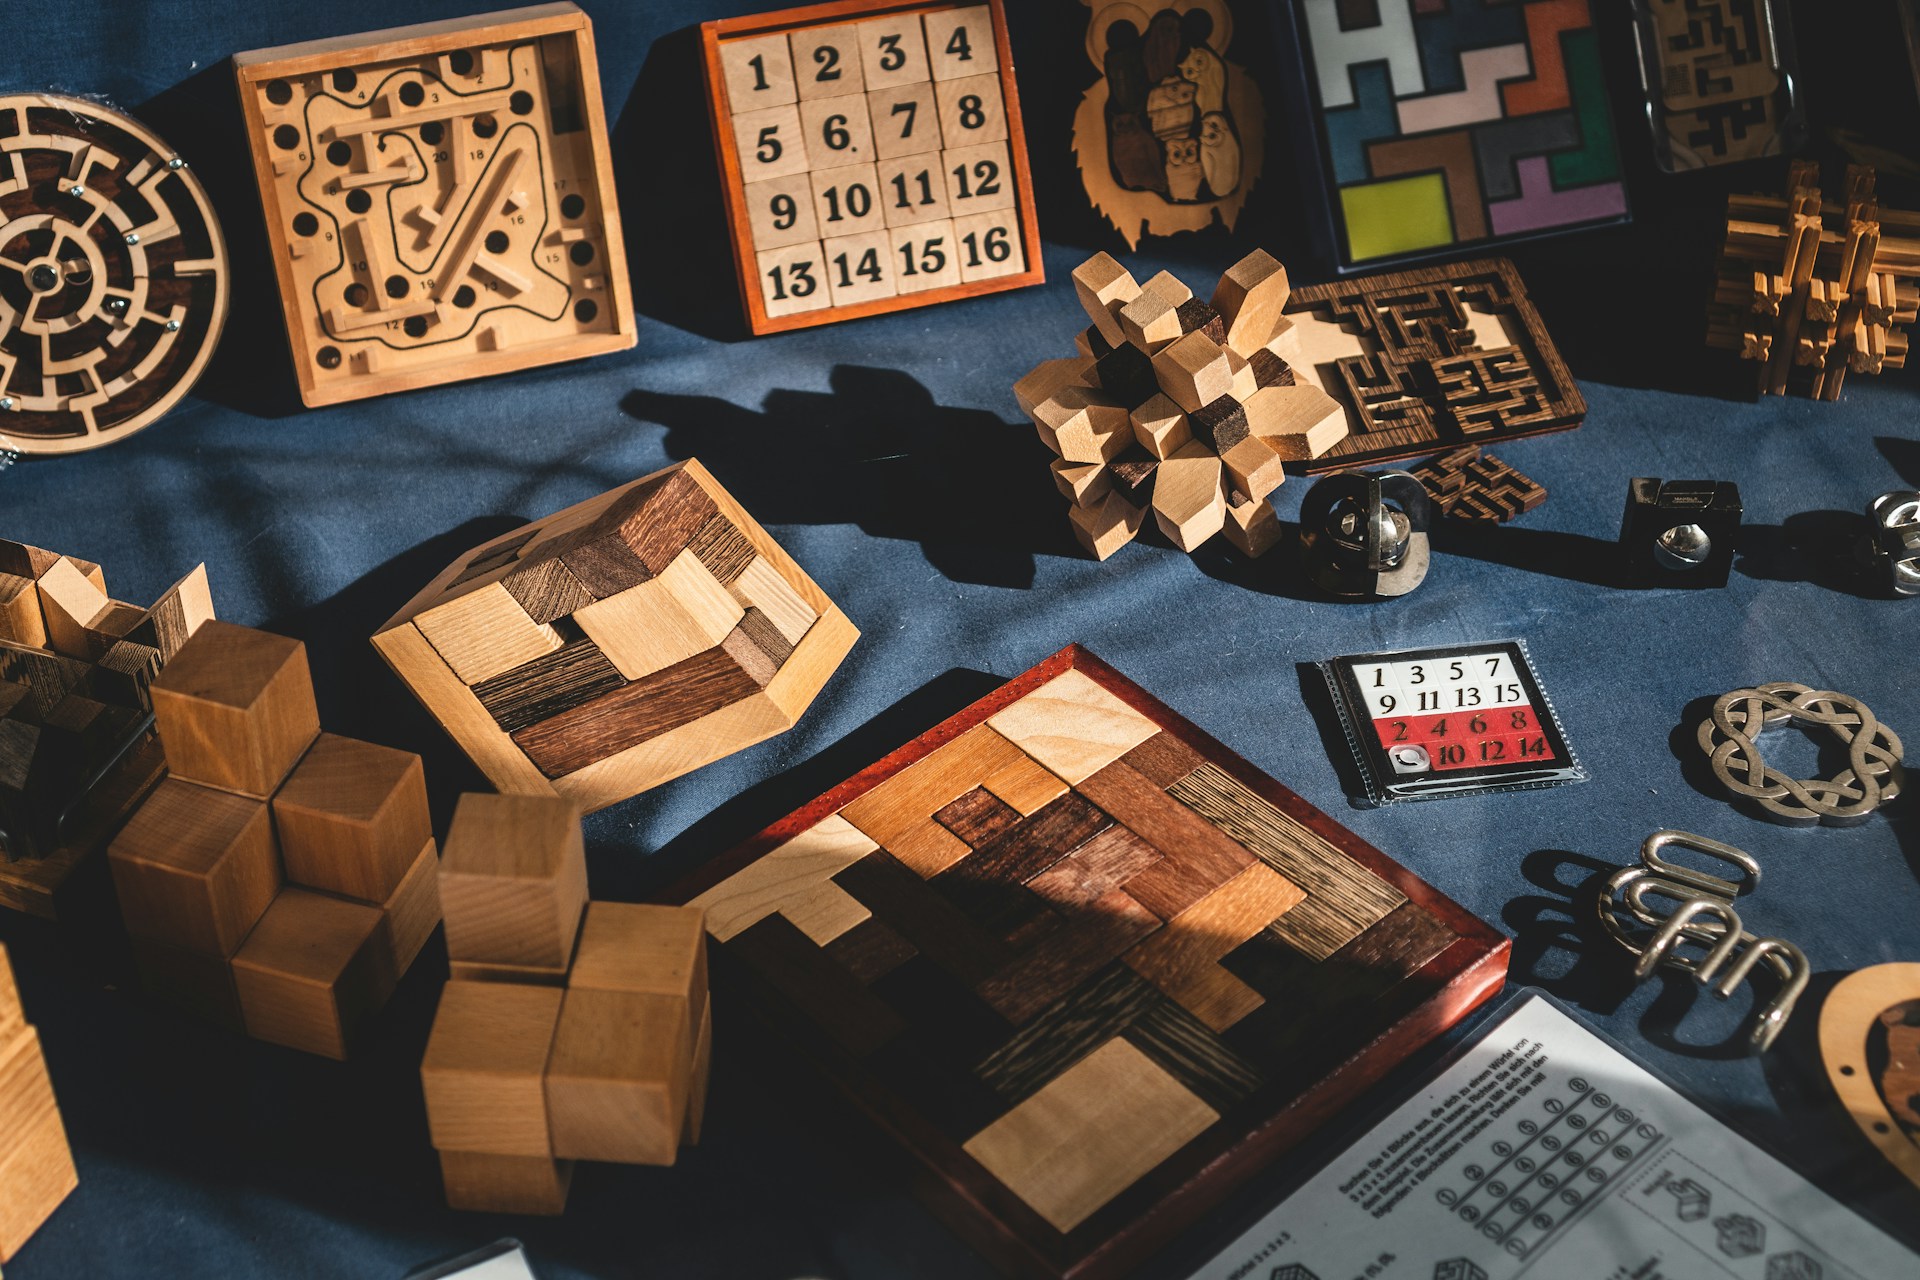 Puzzle blocks